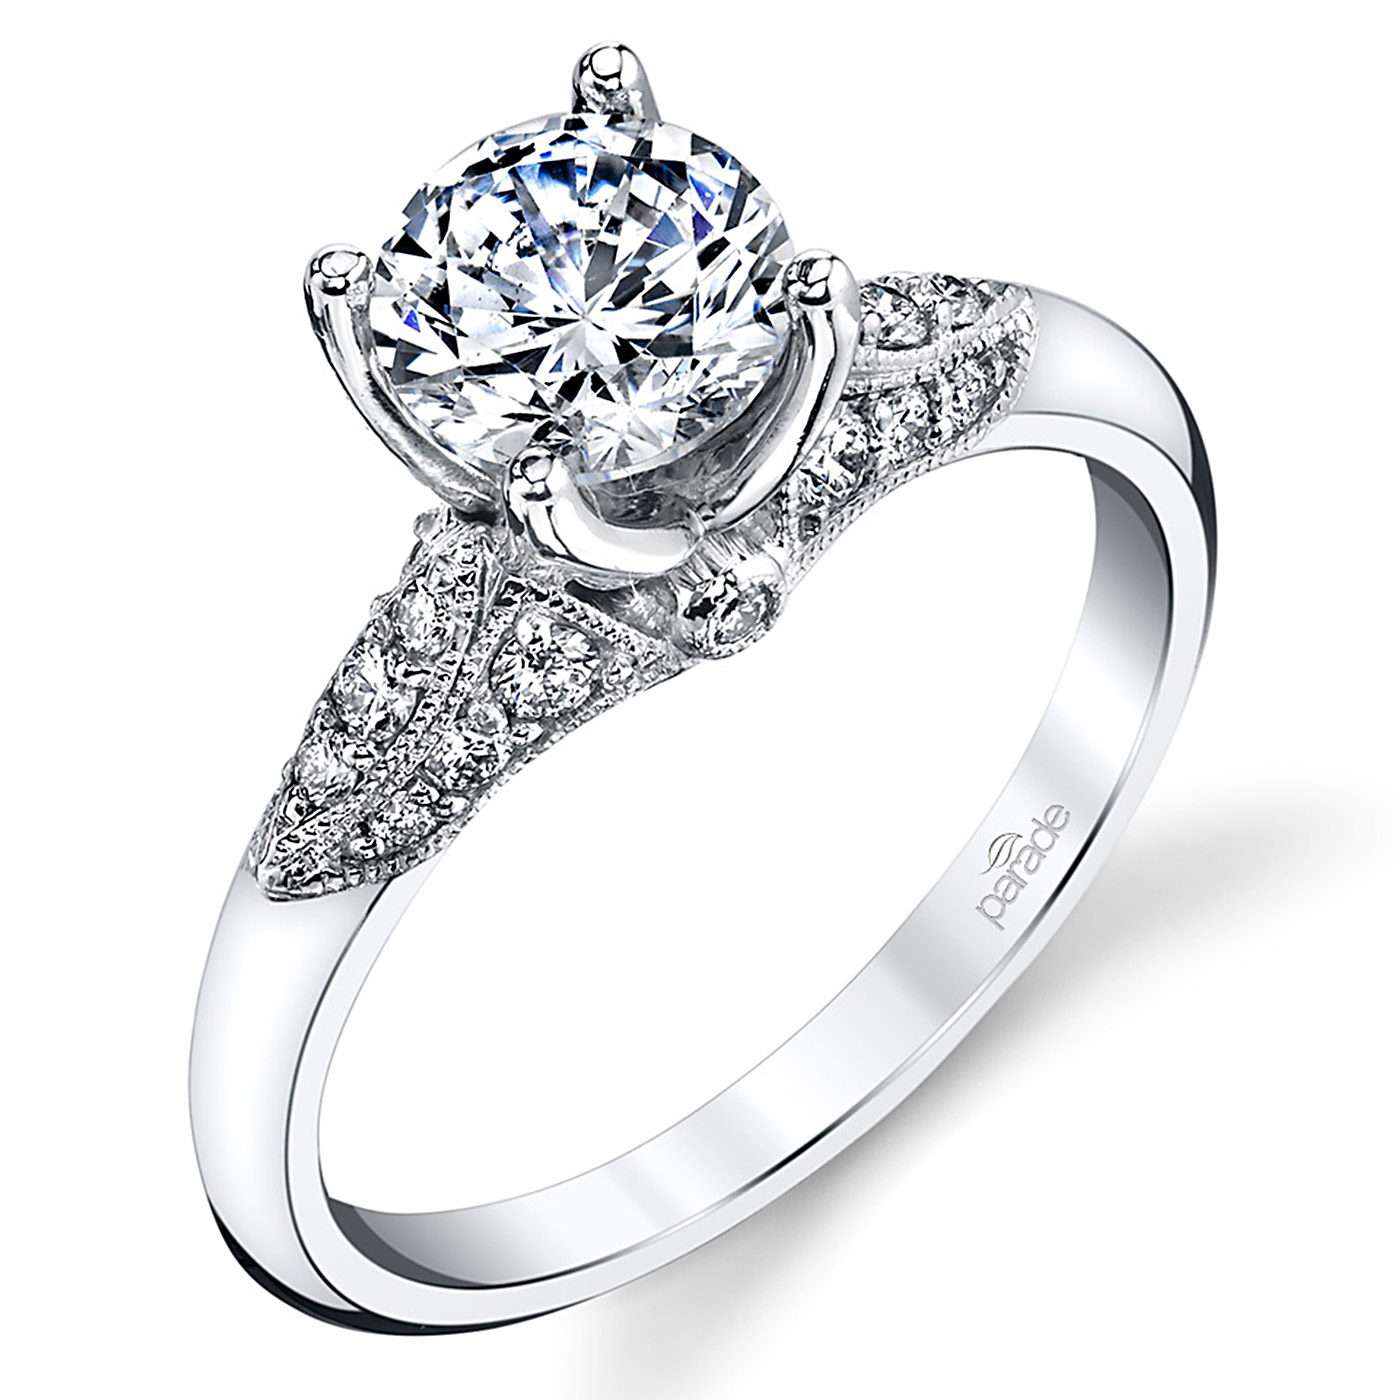 Parade Hera Bridal 14 Karat Diamond Engagement Ring R3942